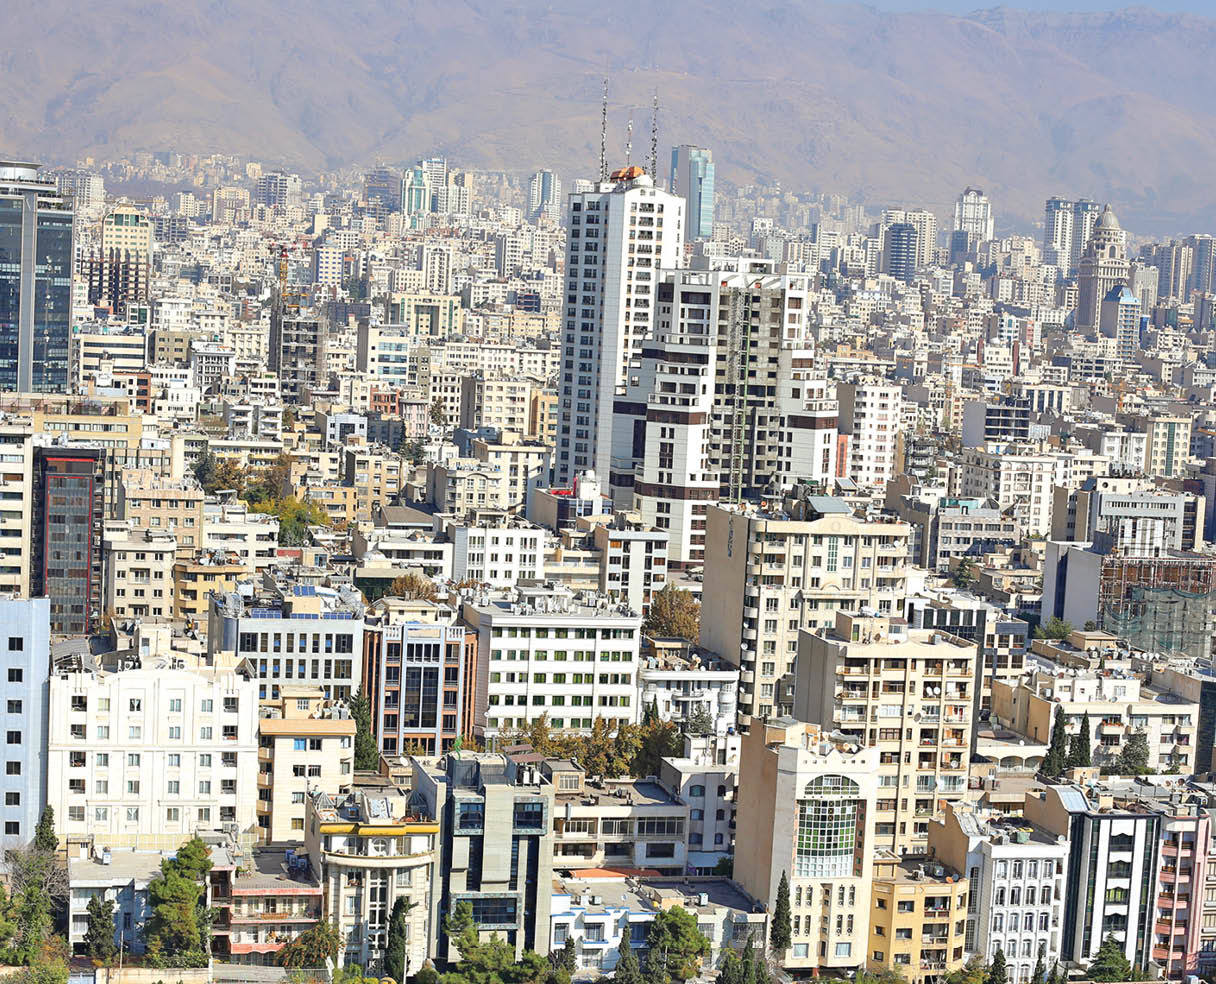  کورس قیمت خانه بین تهران و سایر شهرها